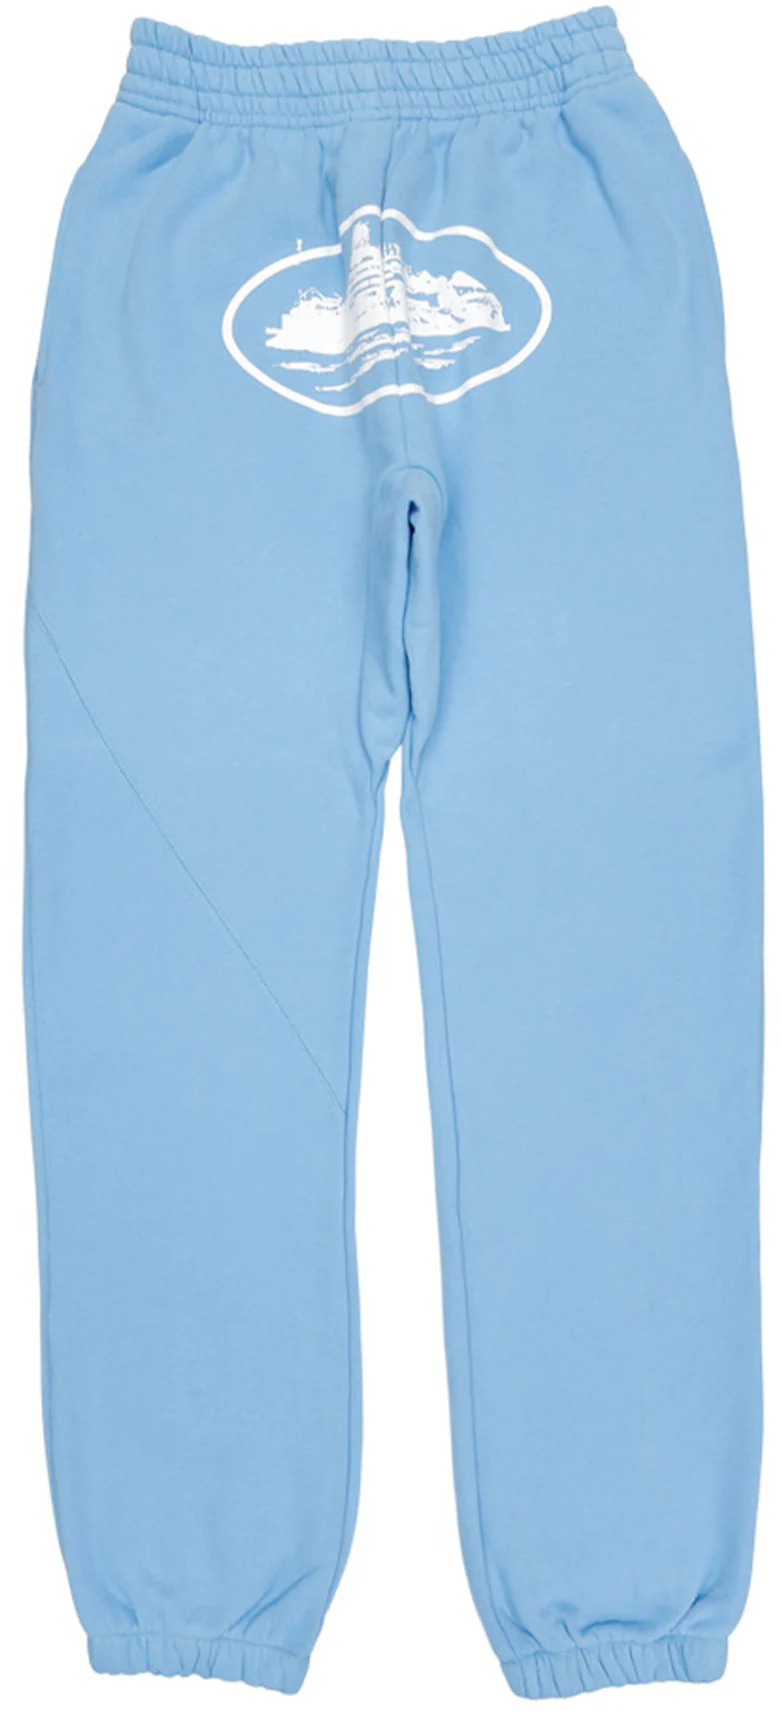 Baby blue corteiz shorts